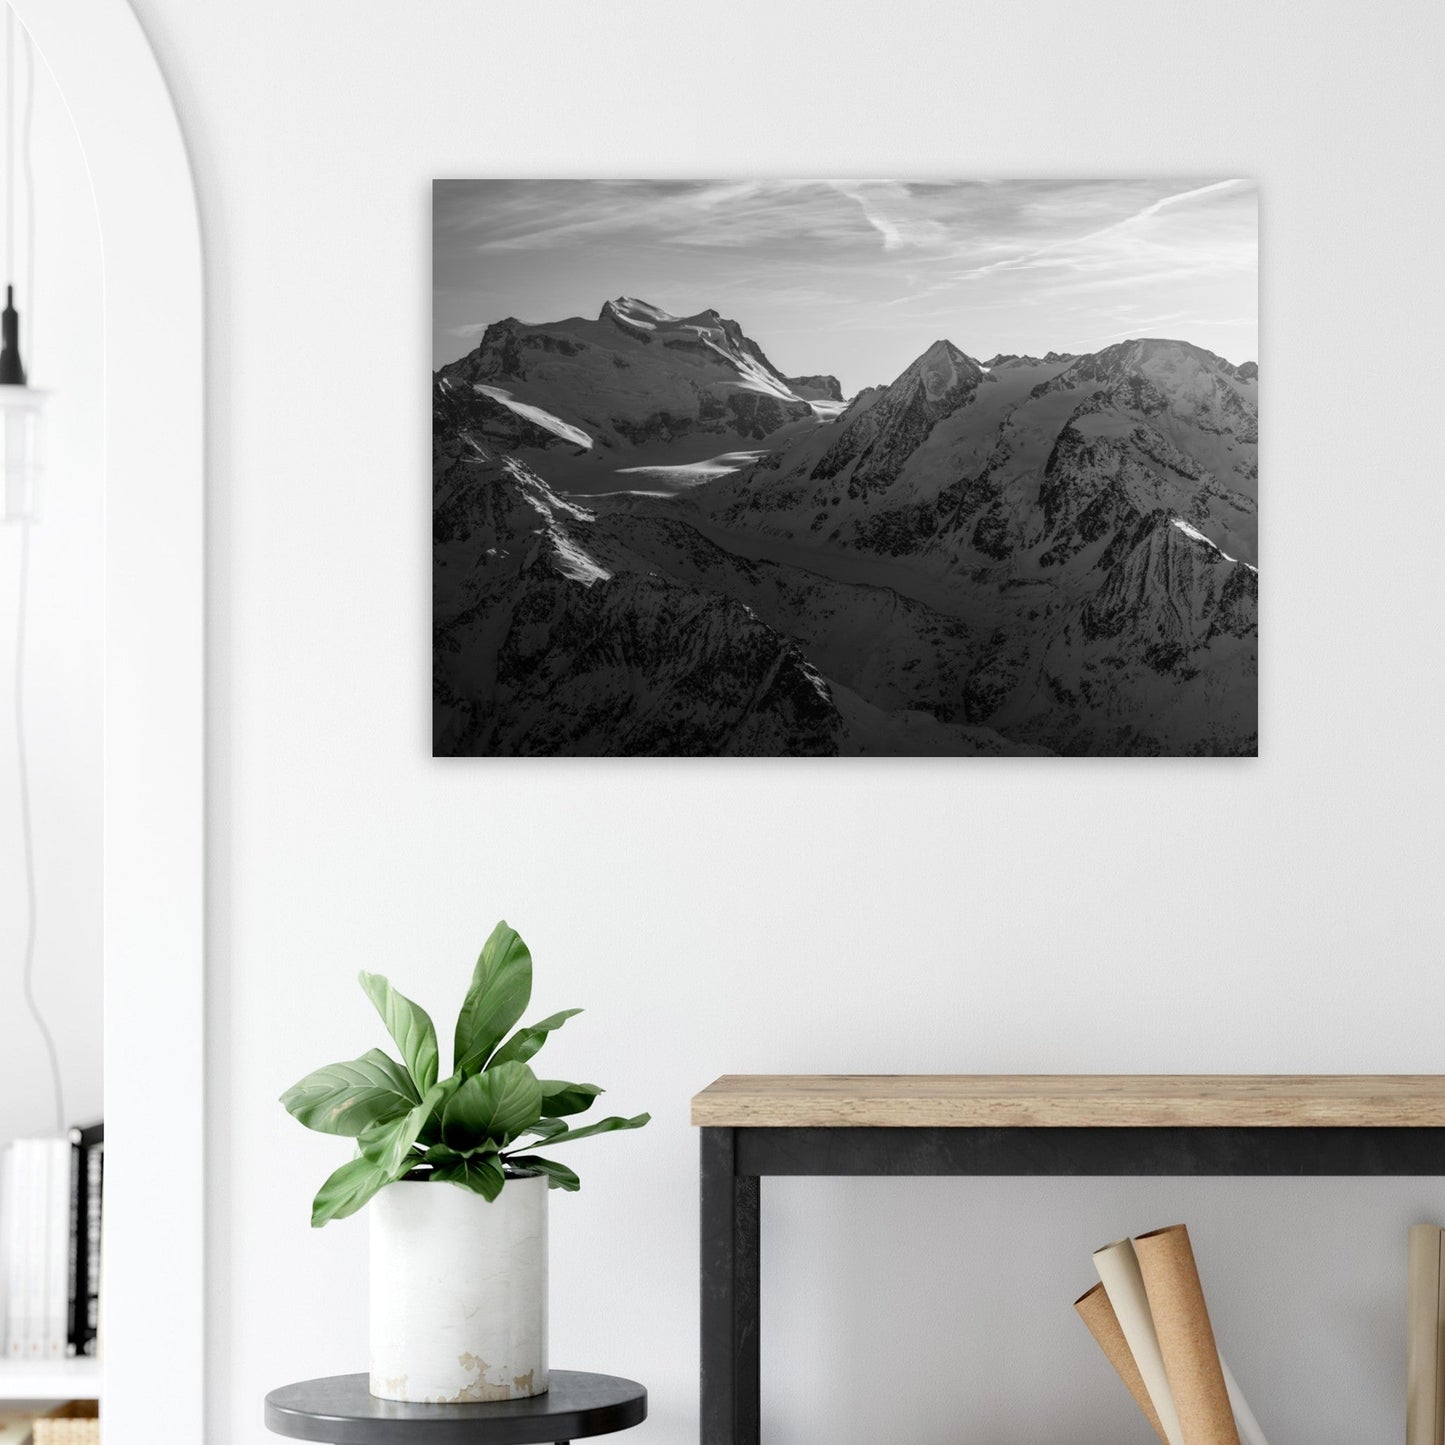 Vente Photo du Grand Combin, Valais, Alpes suisses - Noir & Blanc - Tableau photo alu montagne